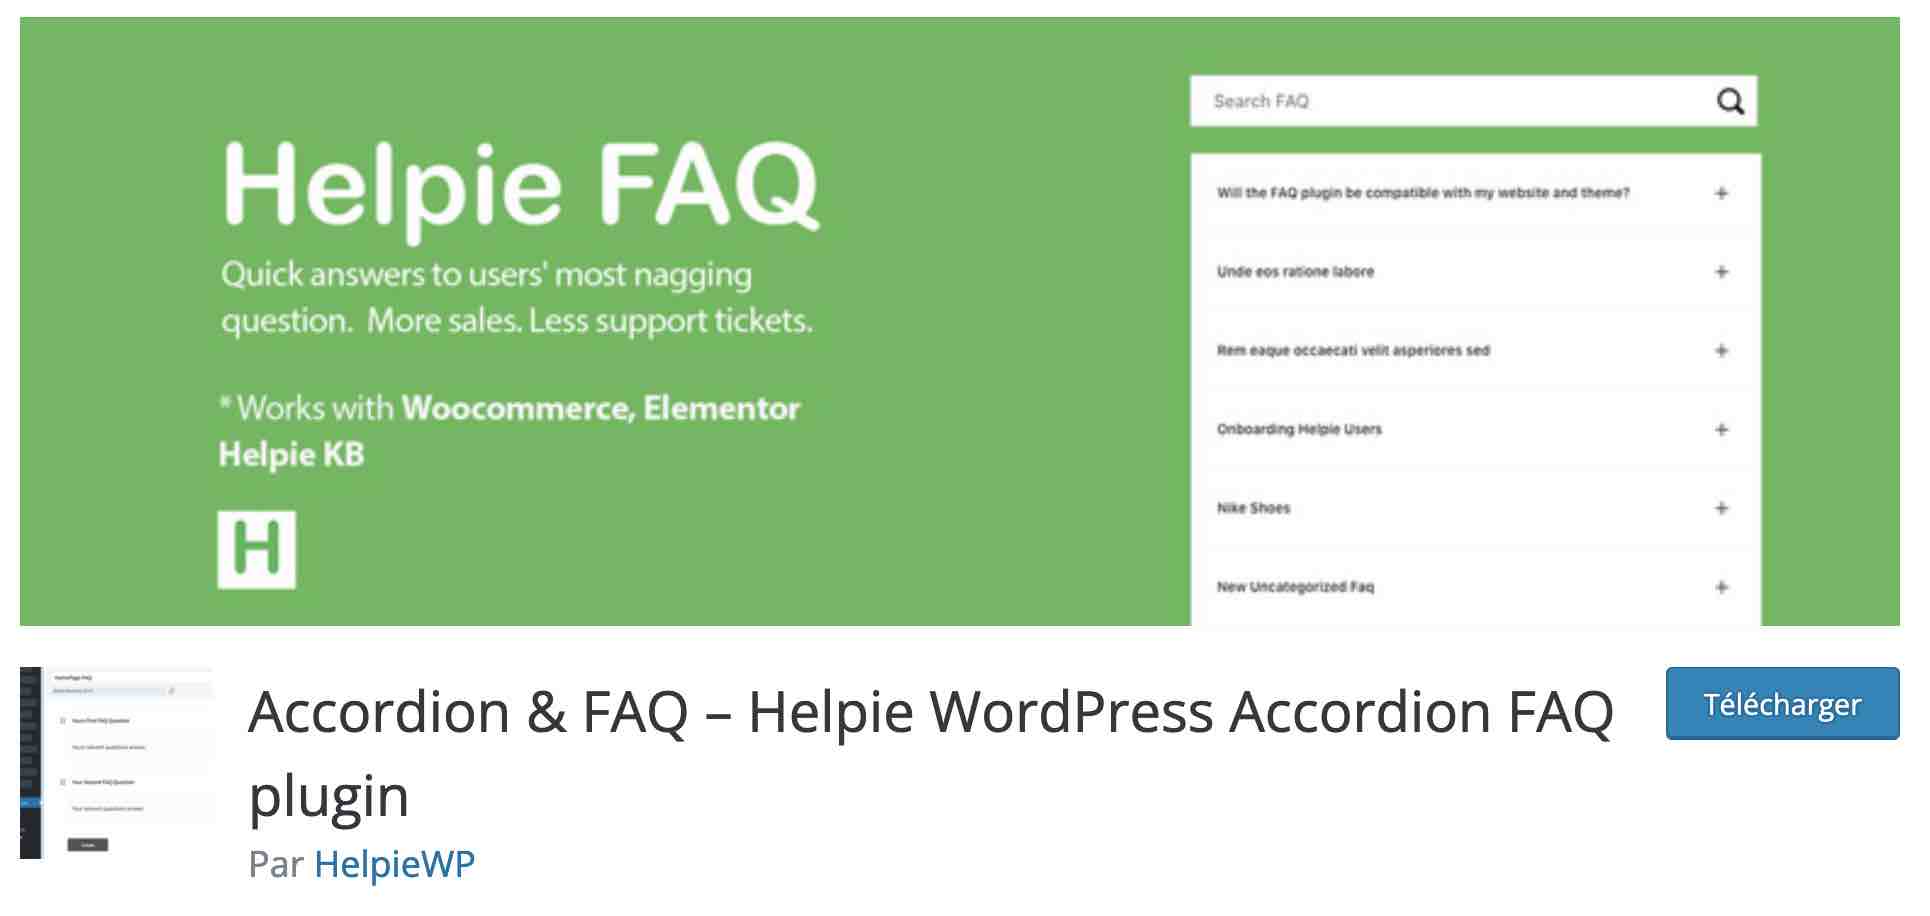 The Accordion & FAQ - Helpie FAQ plugin on WordPress.